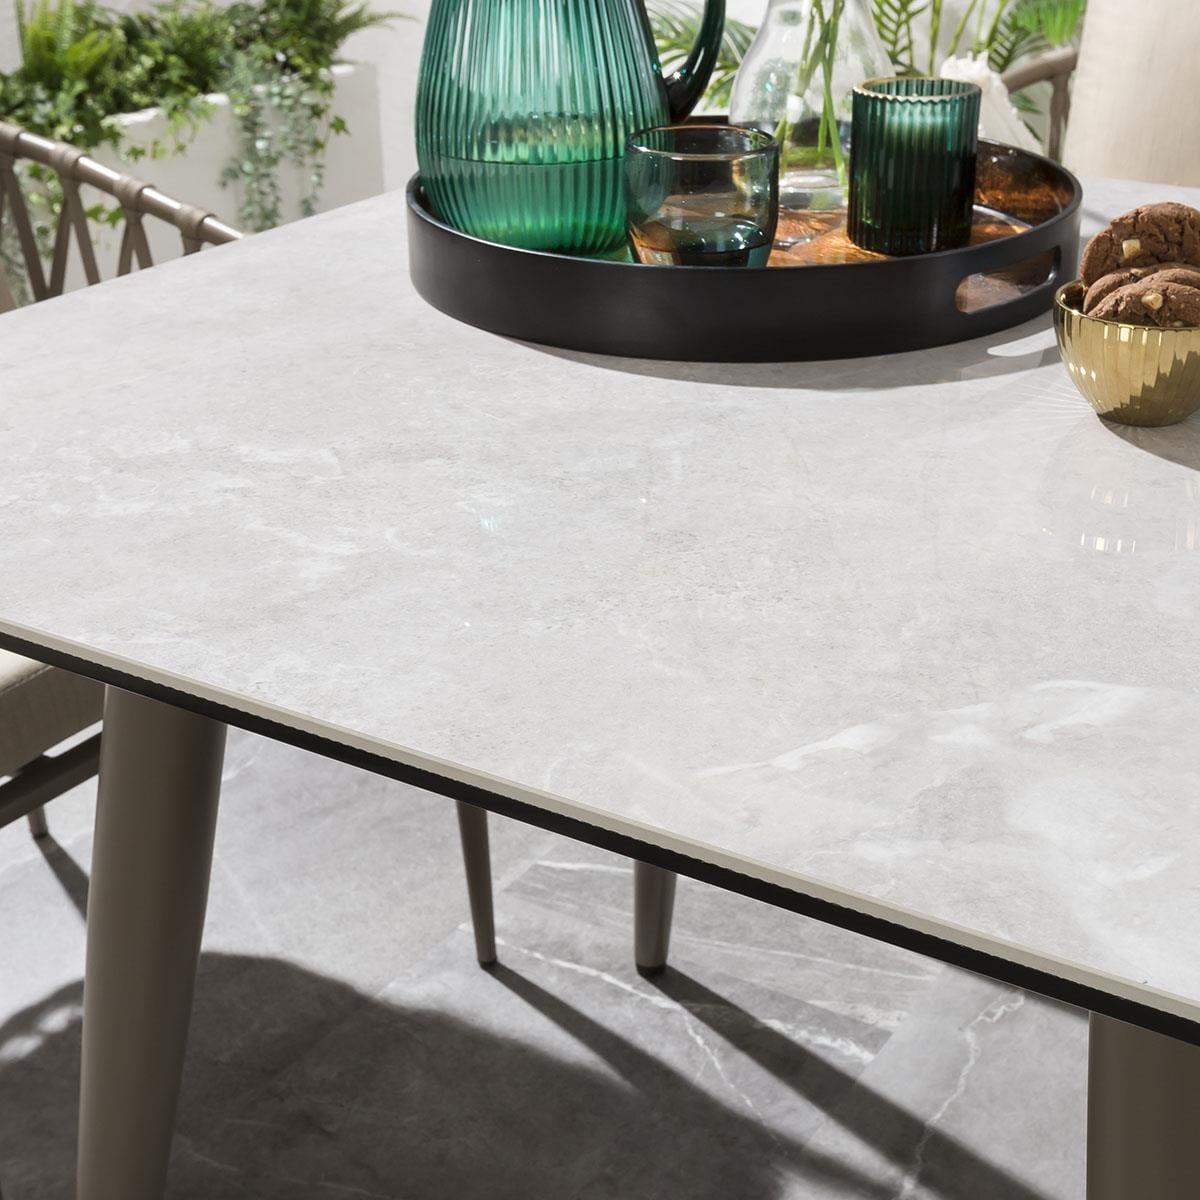 Quatropi Garden Square Bistro Dining Table | Beige Aluminium & Durable Ceramic Top 90cm × 90cm